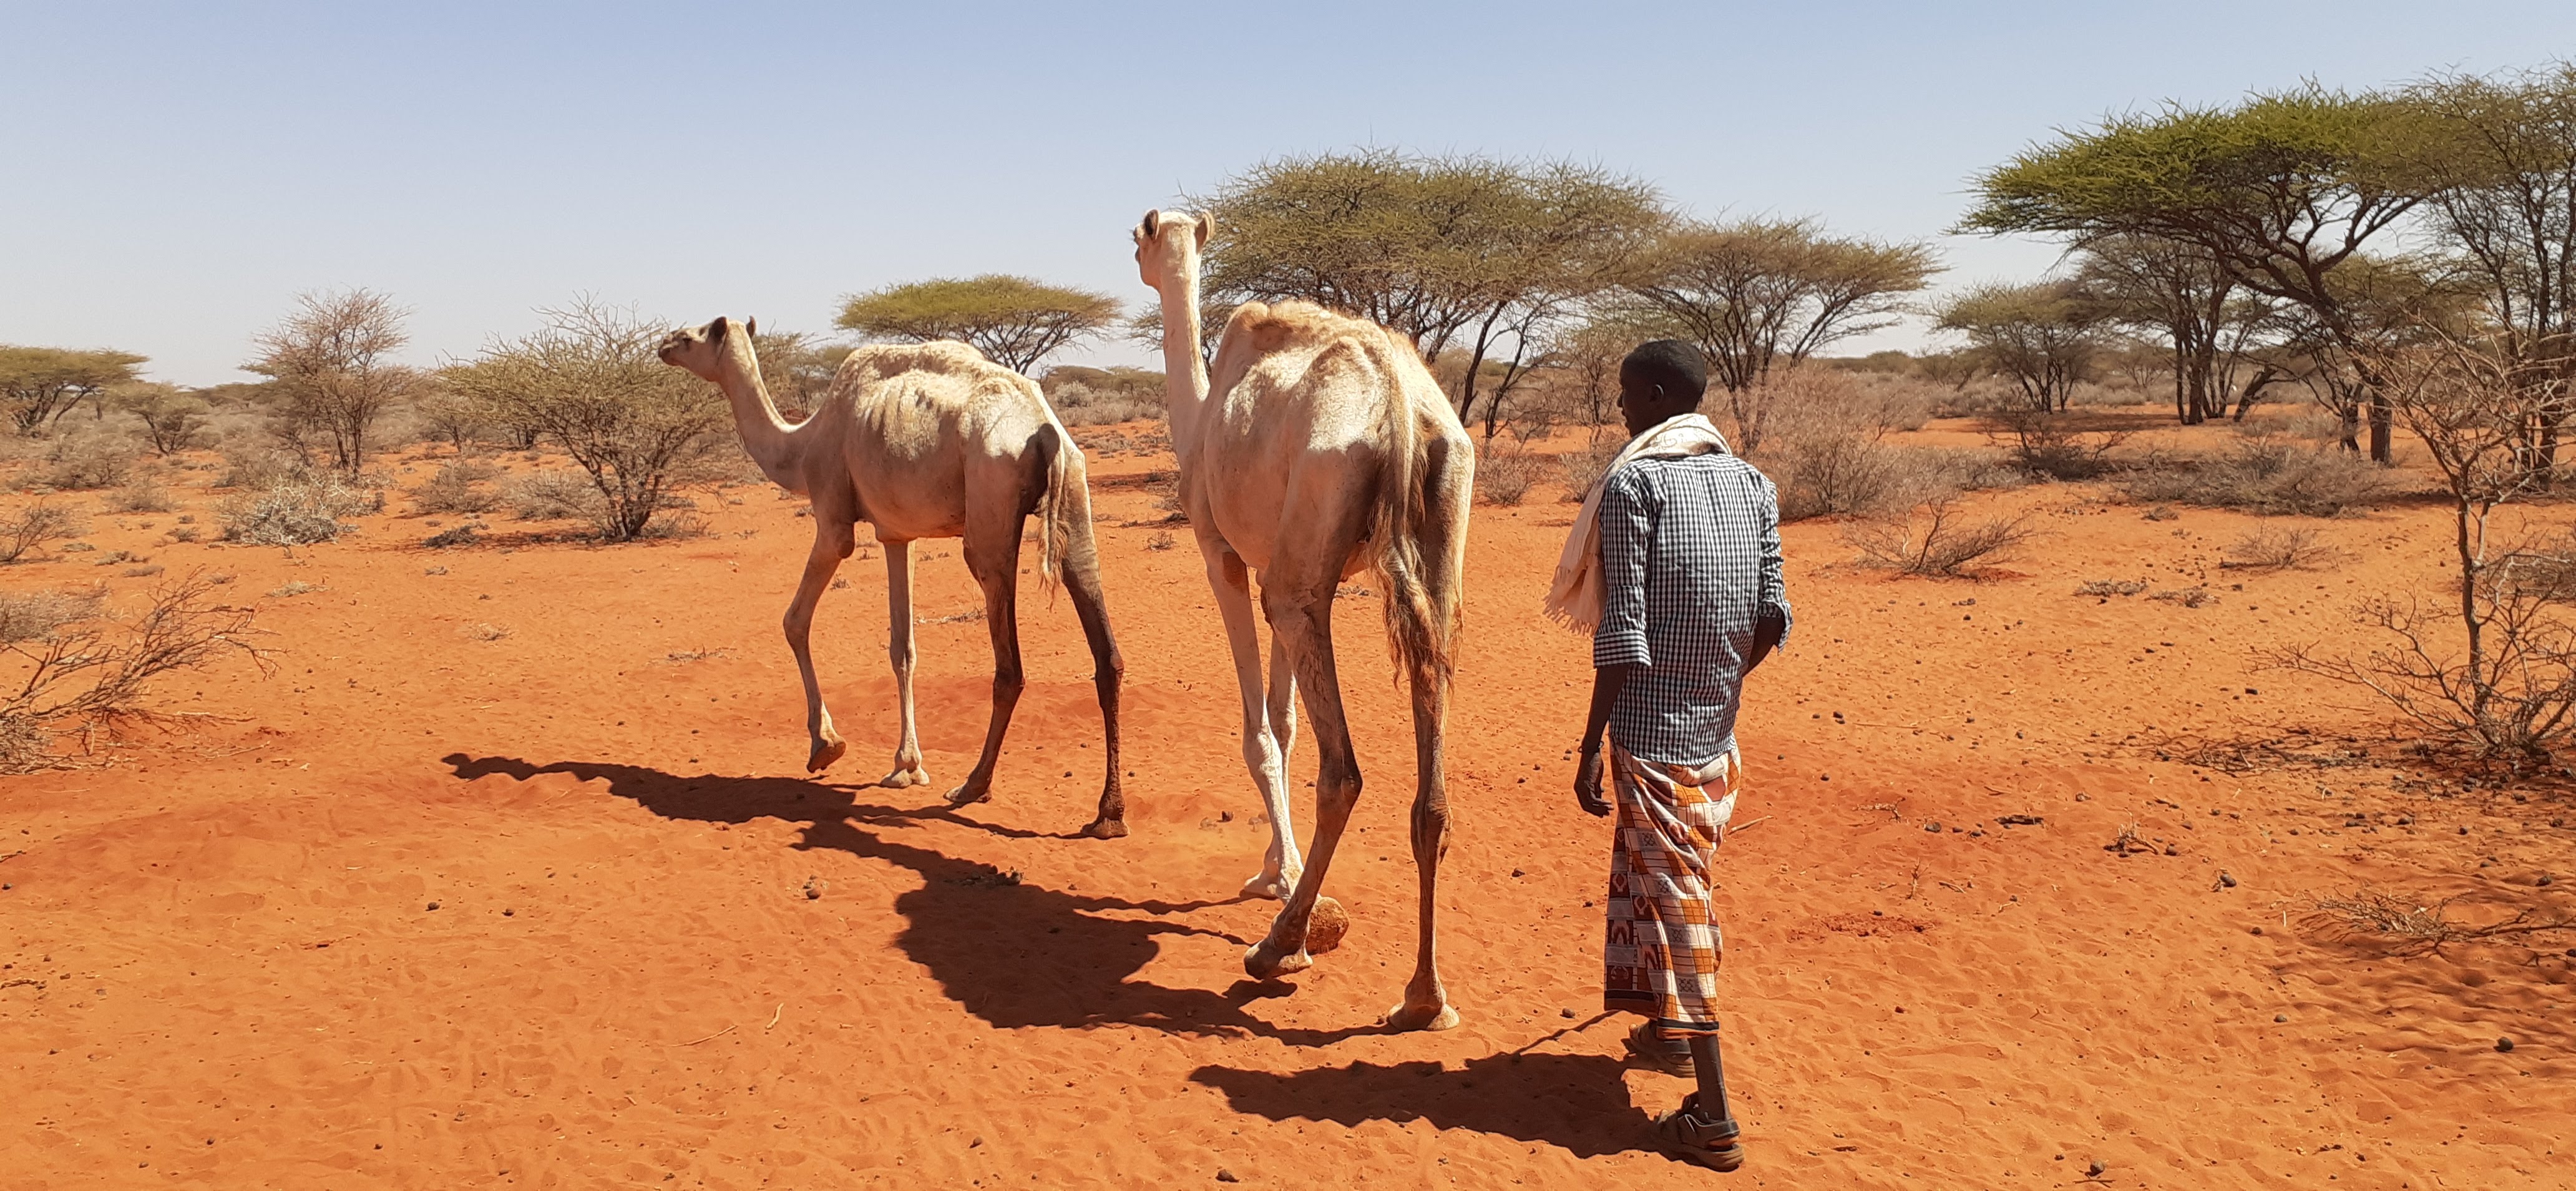 Zwei Kamele und ein Mensch im trockenen Gelände